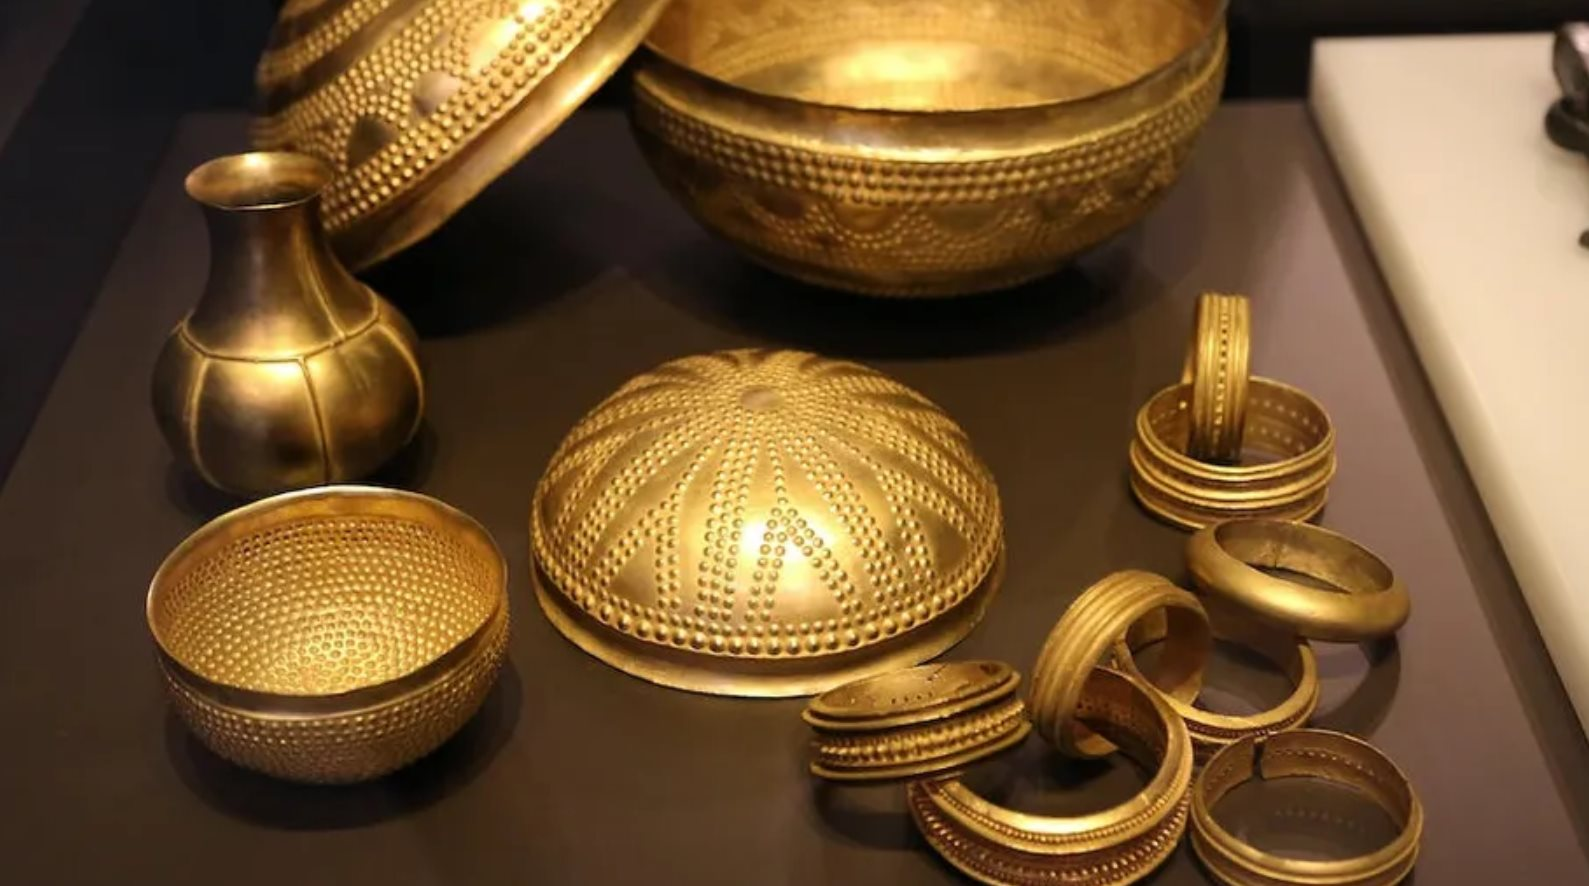 Phát hiện 2 vật thể bằng sắt nằm giữa kho vàng nghìn năm tuổi: Còn quý hơn cả vàng- Ảnh 1.